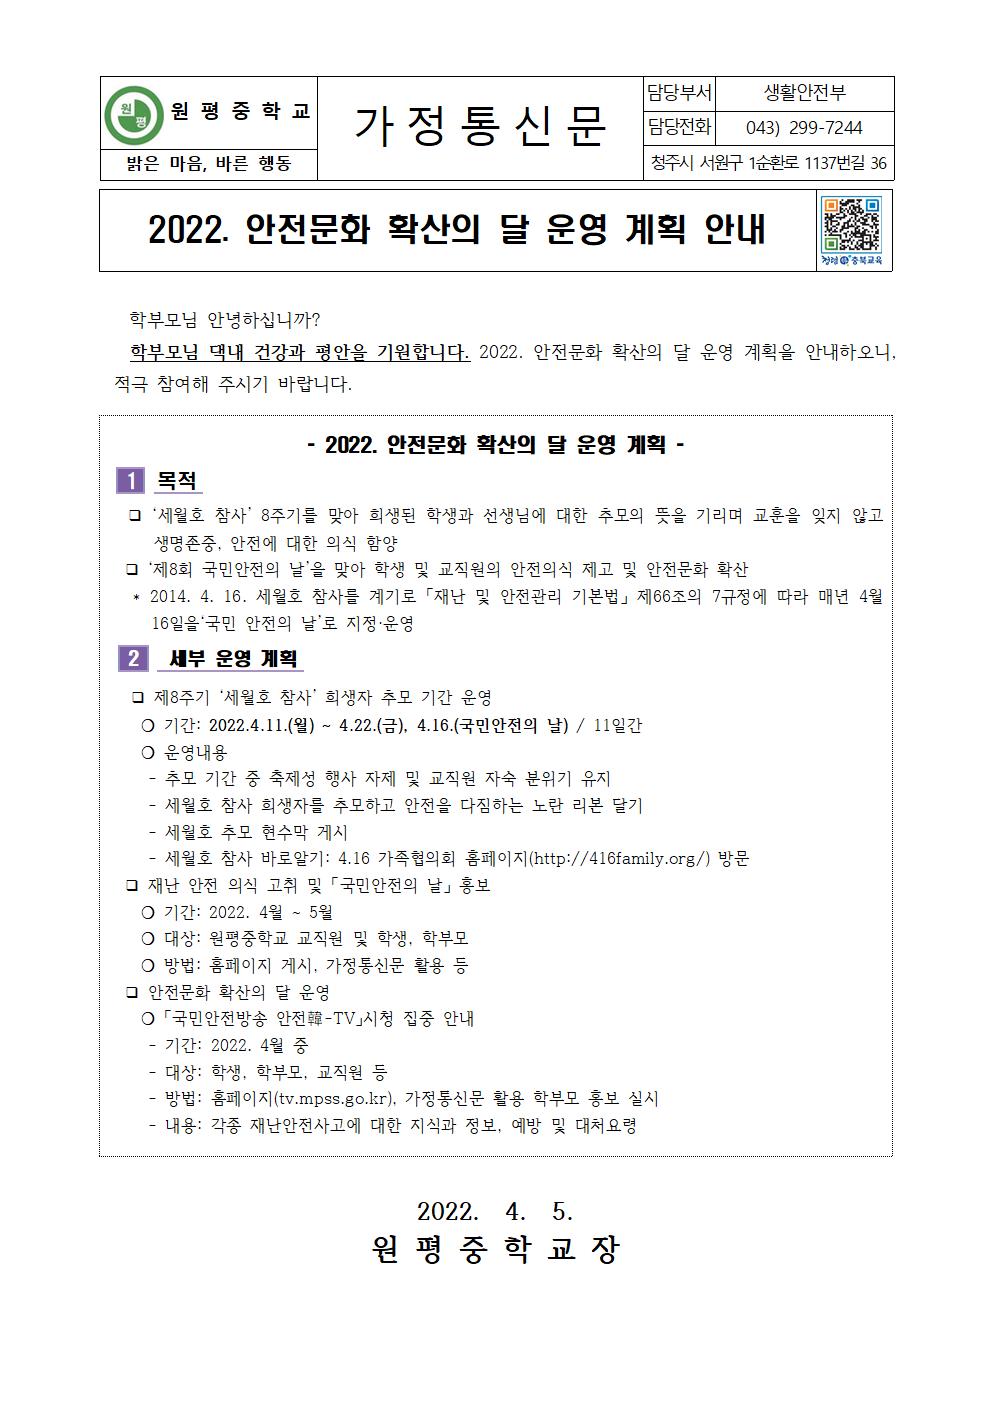 2022. 안전문화 확산의 달 운영 계획 안내 가정통신문001